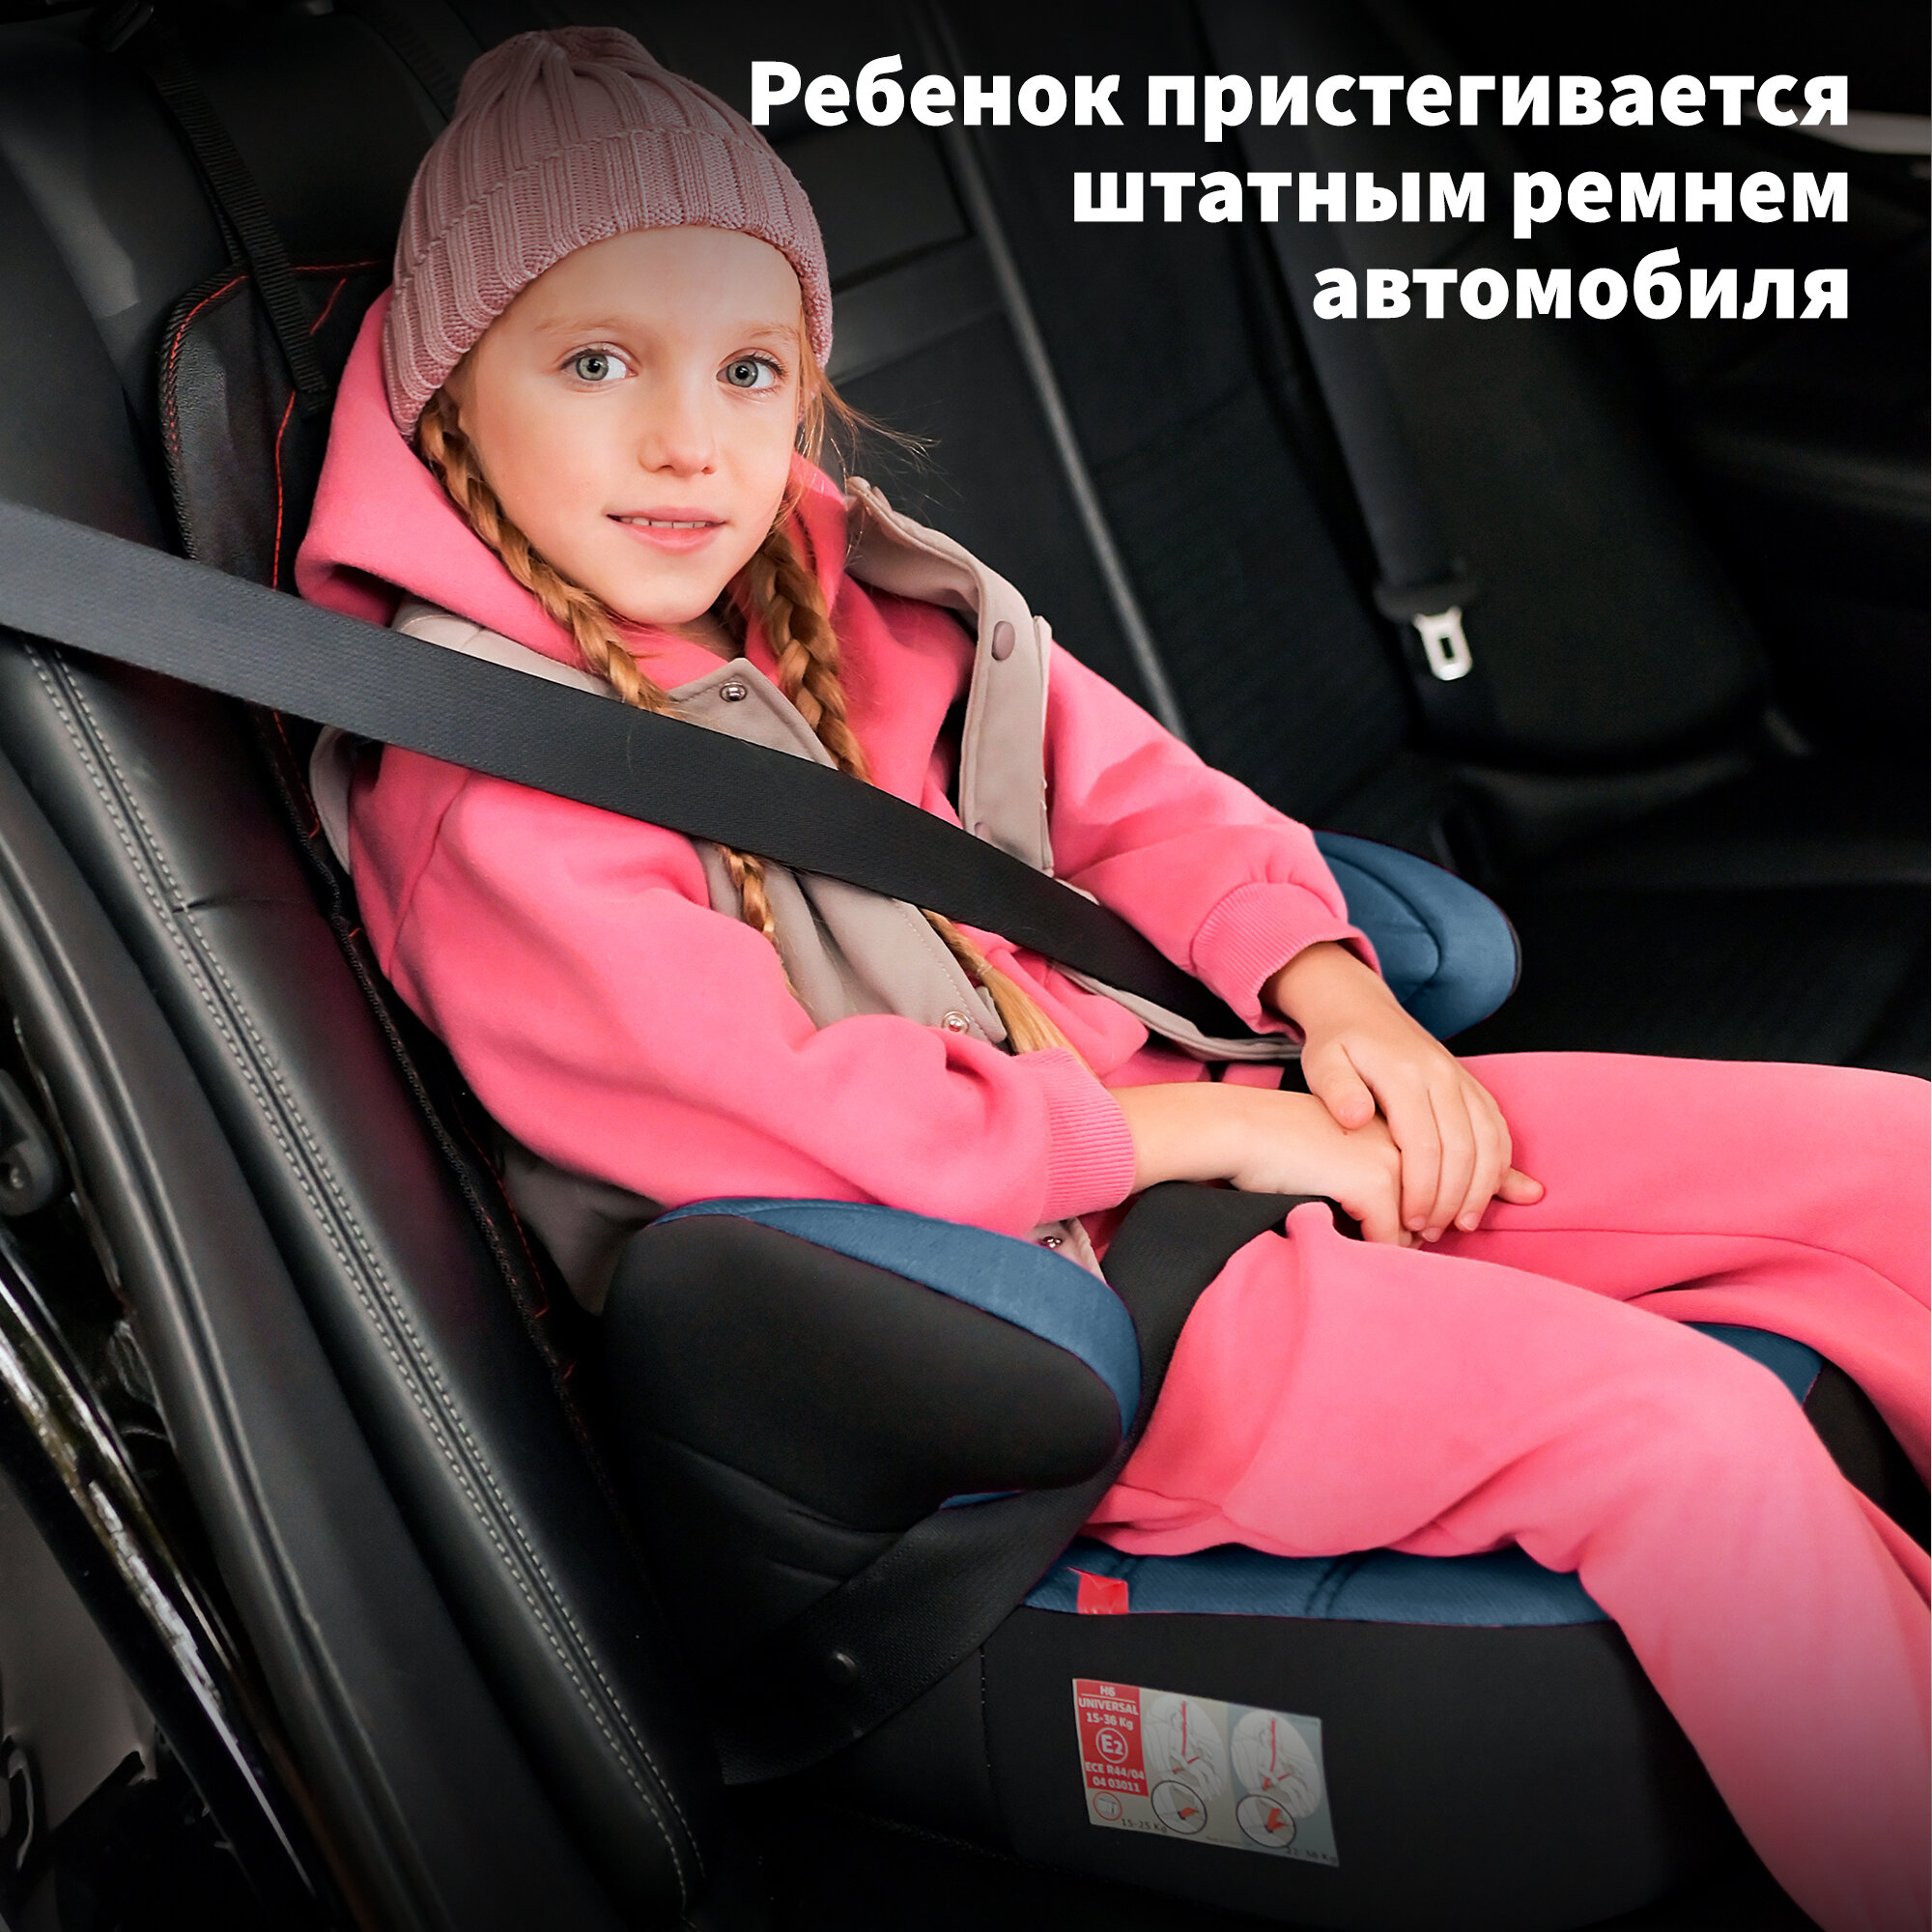 Детское автокресло - бустер автомобильный NANIA DREAM Denim Luxe Blue от 6 до 12 лет 15-36 кг группа 2/3 синий